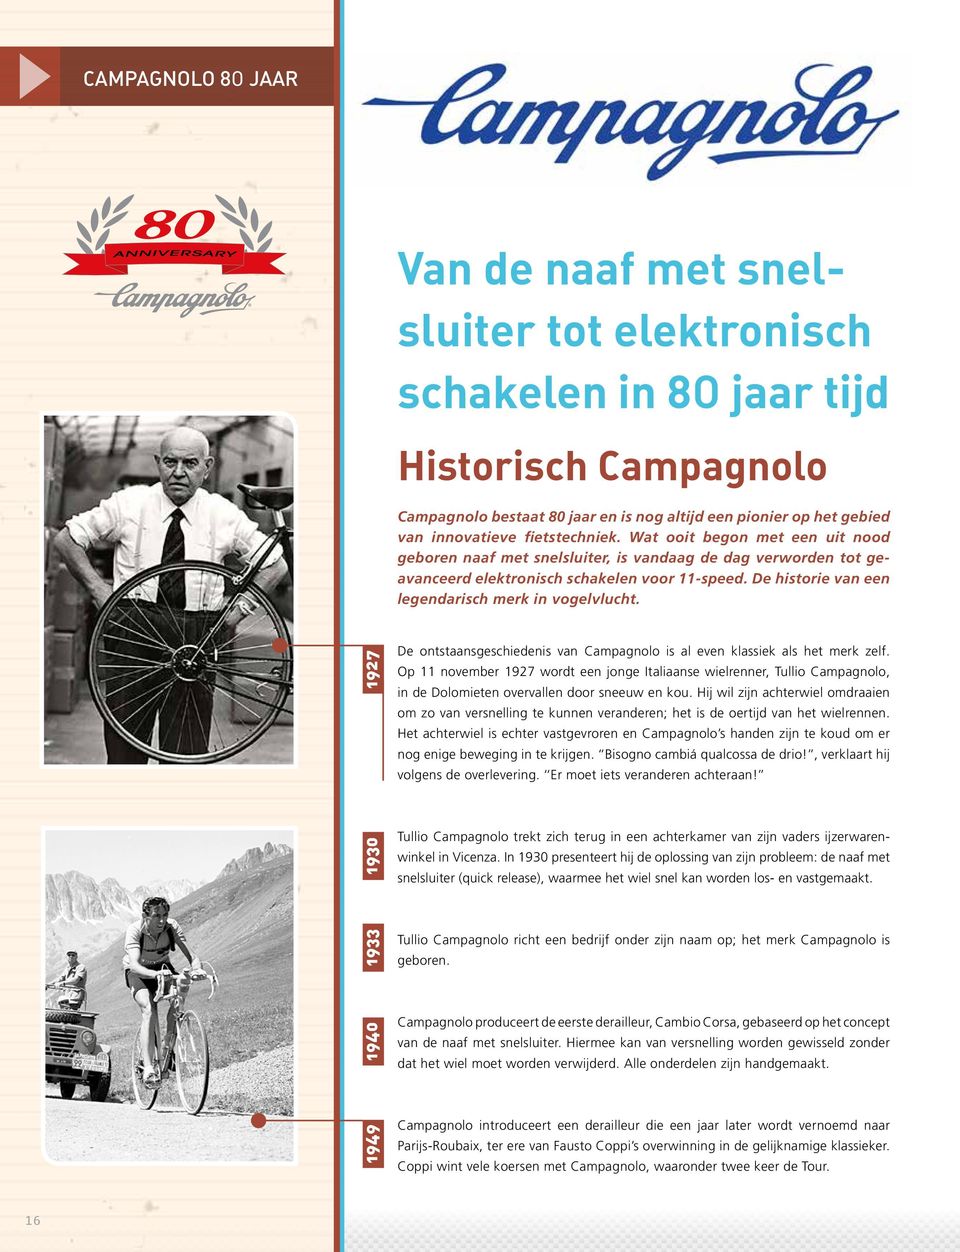 De historie van een legendarisch merk in vogelvlucht. 1949 1940 1933 1930 1927 De ontstaansgeschiedenis van Campagnolo is al even klassiek als het merk zelf.